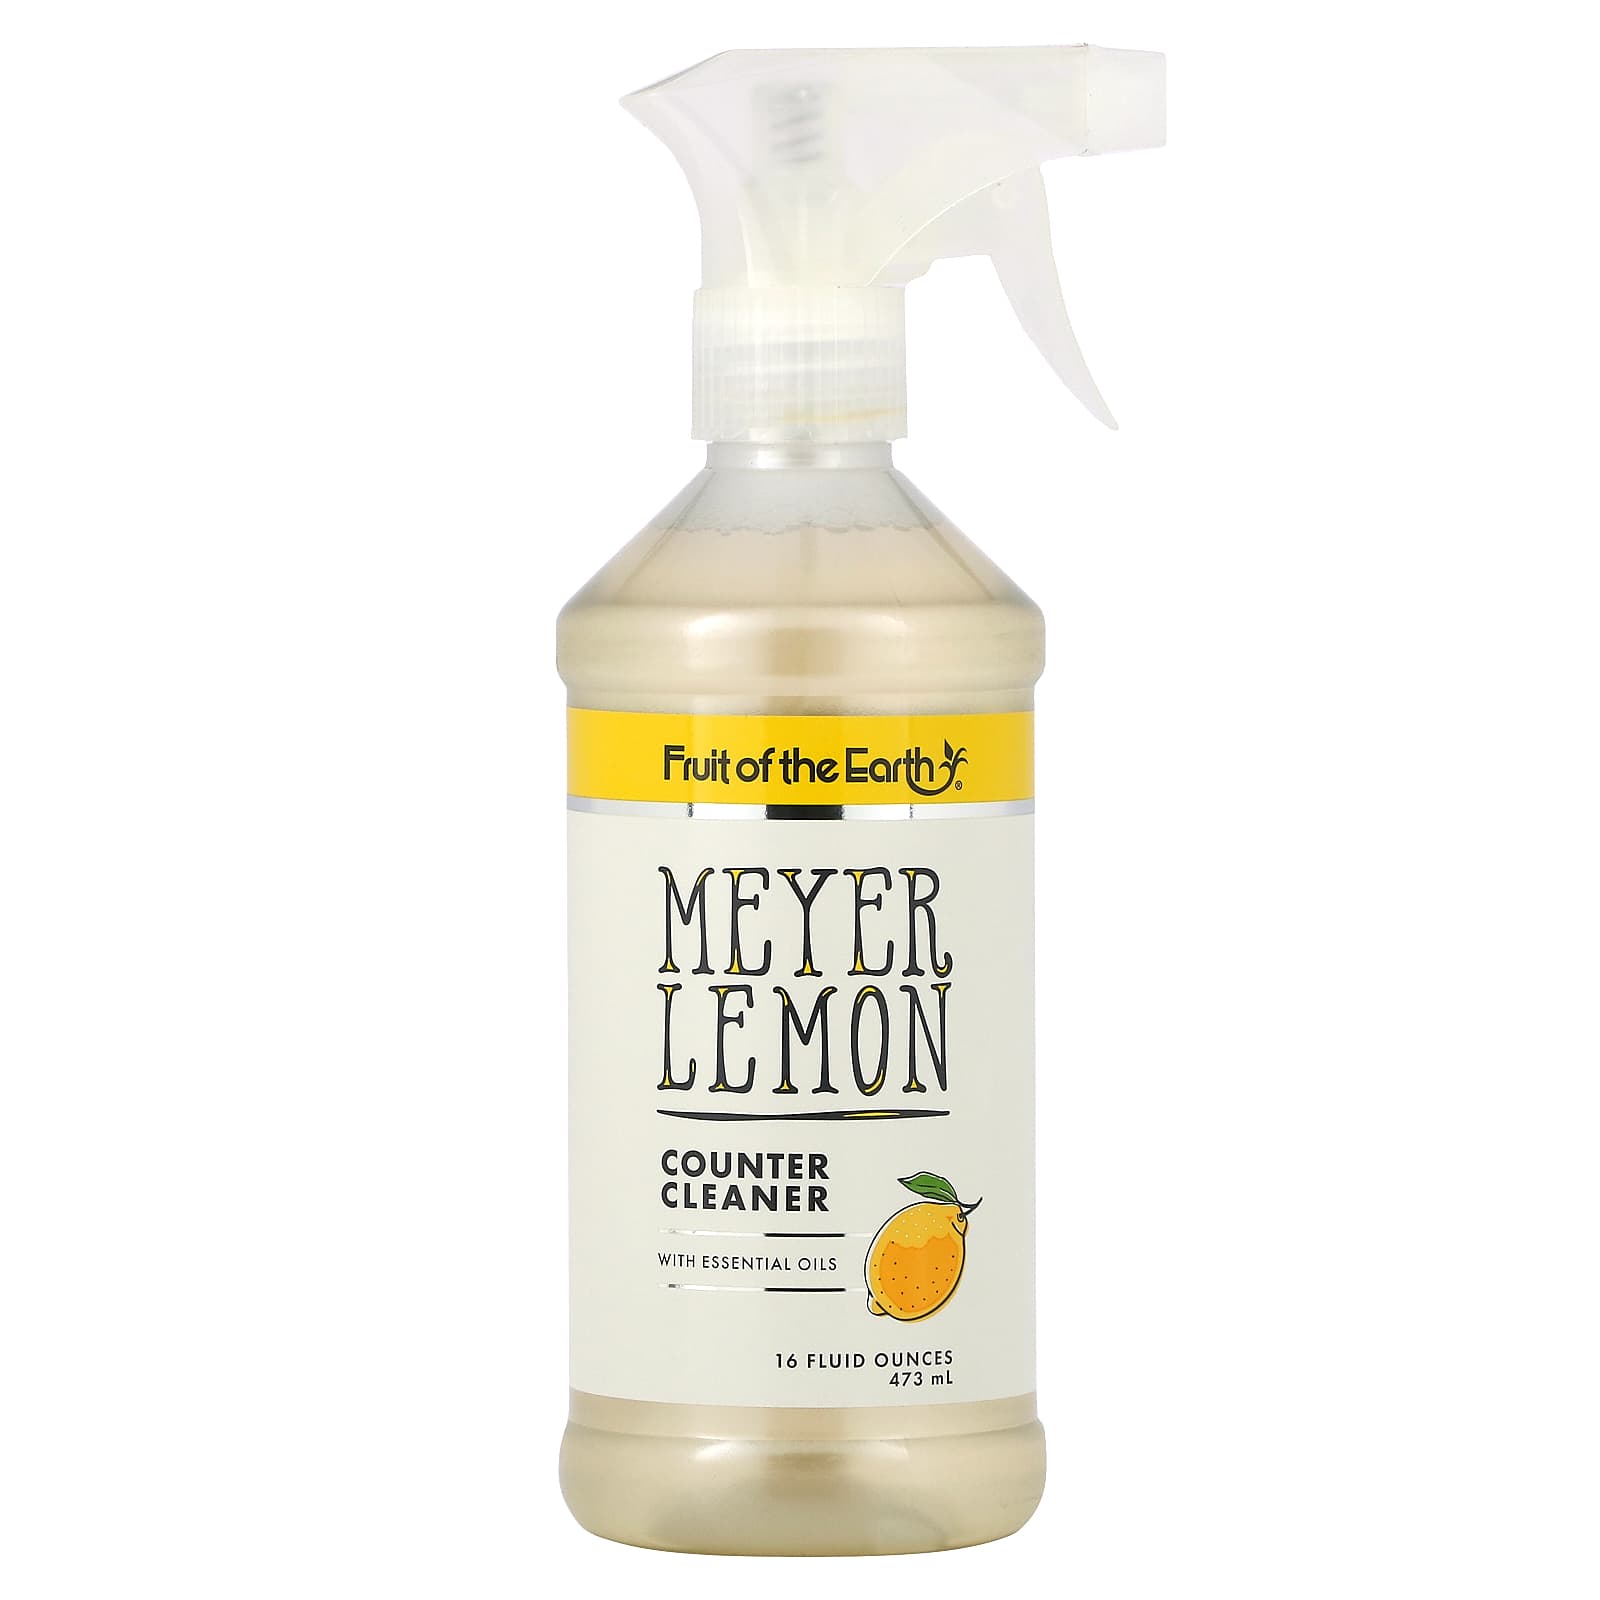 Fruit of the Earth-Meyer Lemon Counter Cleaner-16 fl oz (473 ml)